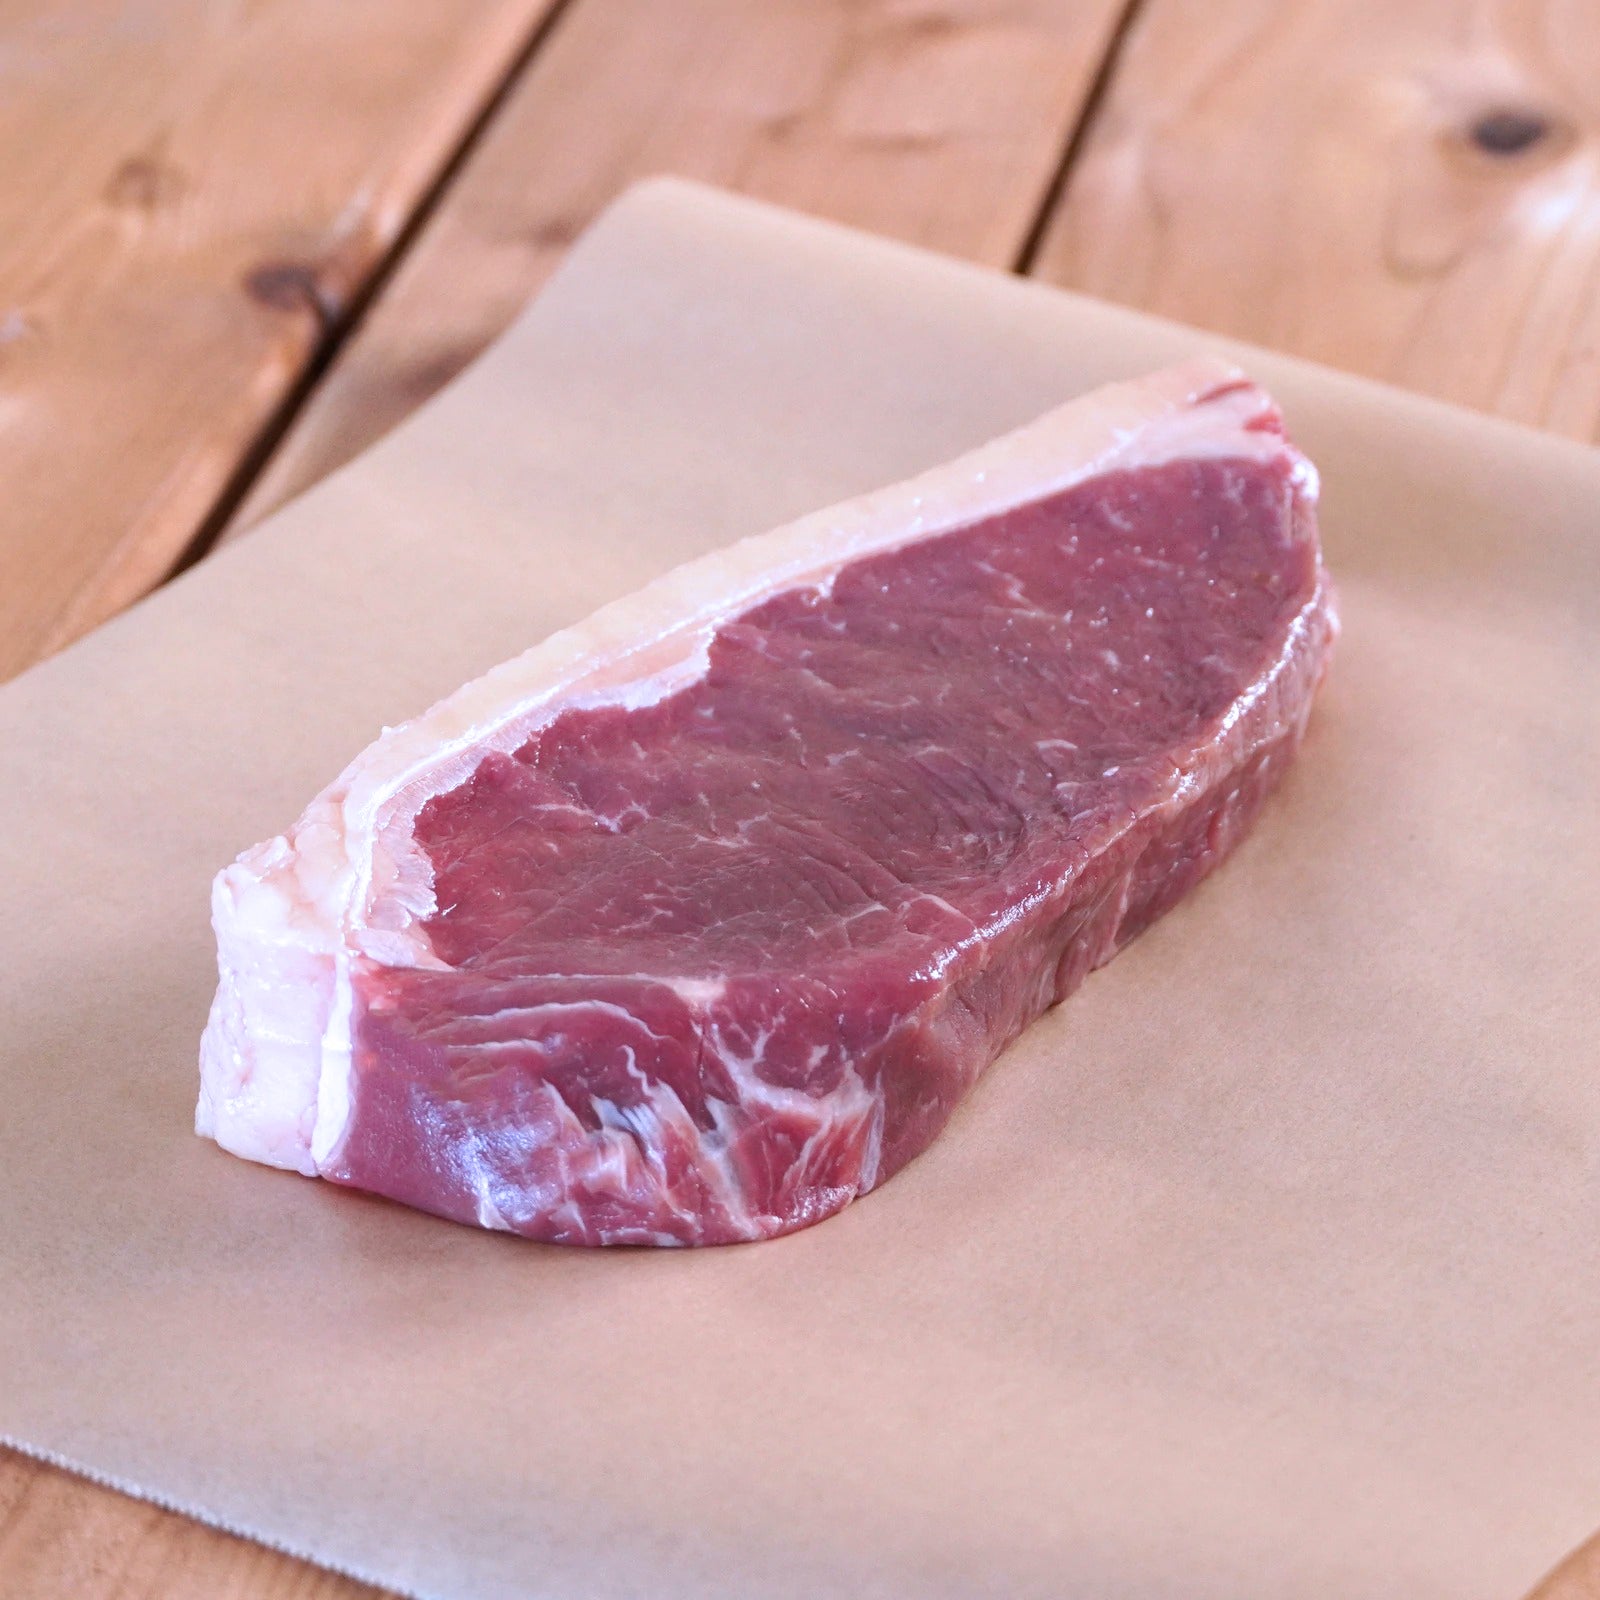 送料無料 グラスフェッドビーフ 牛肉 ステーキ 3種 (リブロース ＆ サーロイン ＆ ヒレ) お肉 詰め合わせセット 合計9点 (1.8kg) ホライズンファームズ